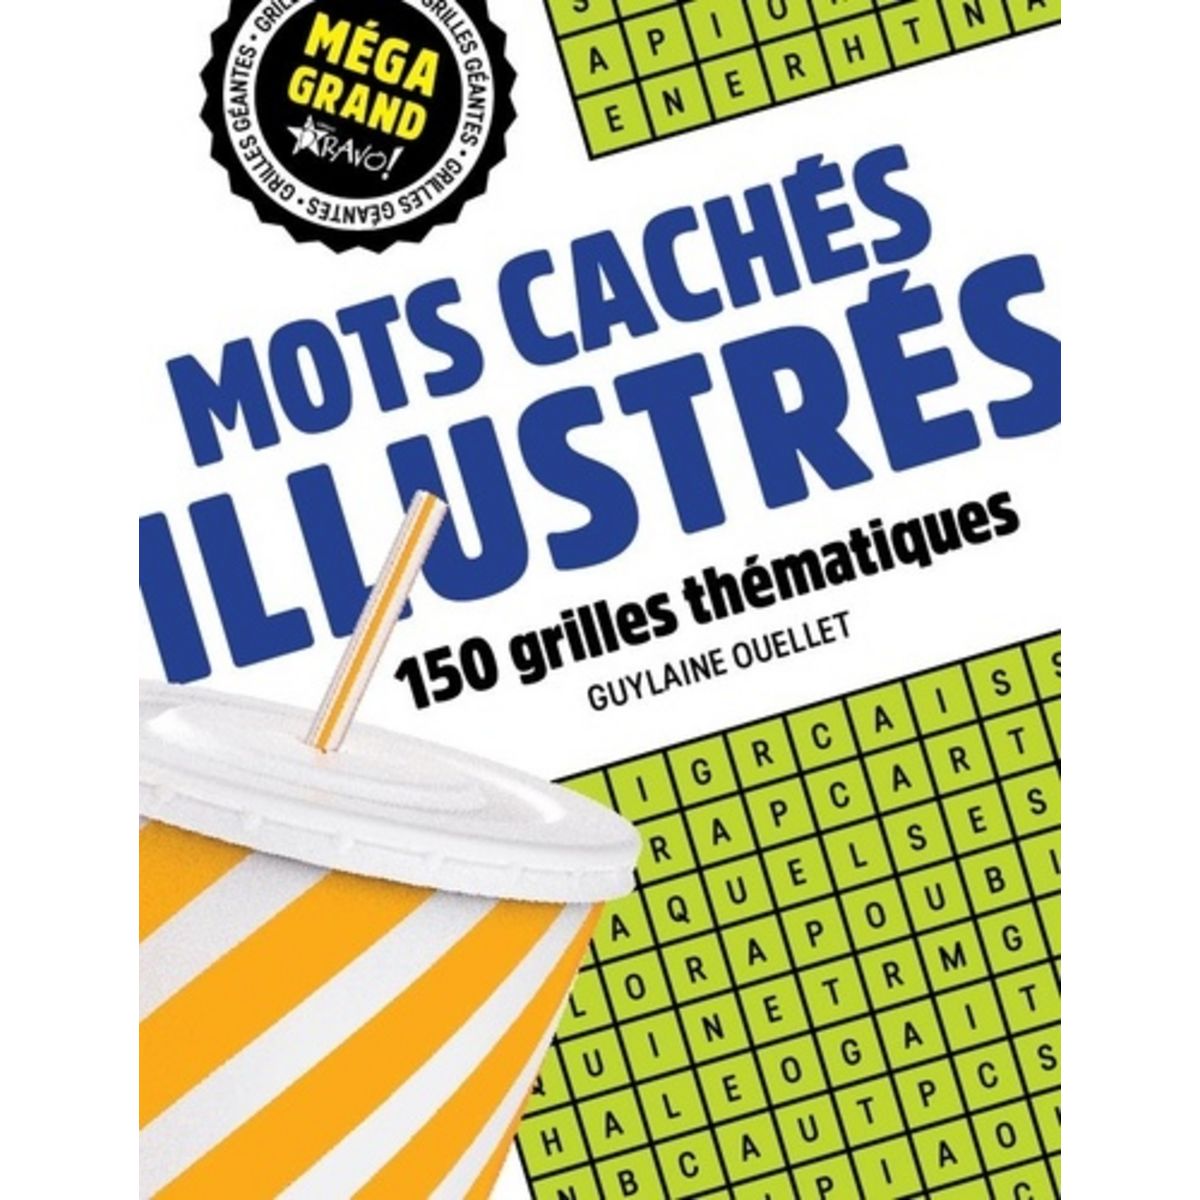  MOTS CACHES ILLUSTRES. 150 GRILLES THEMATIQUES, Ouellet Guylaine